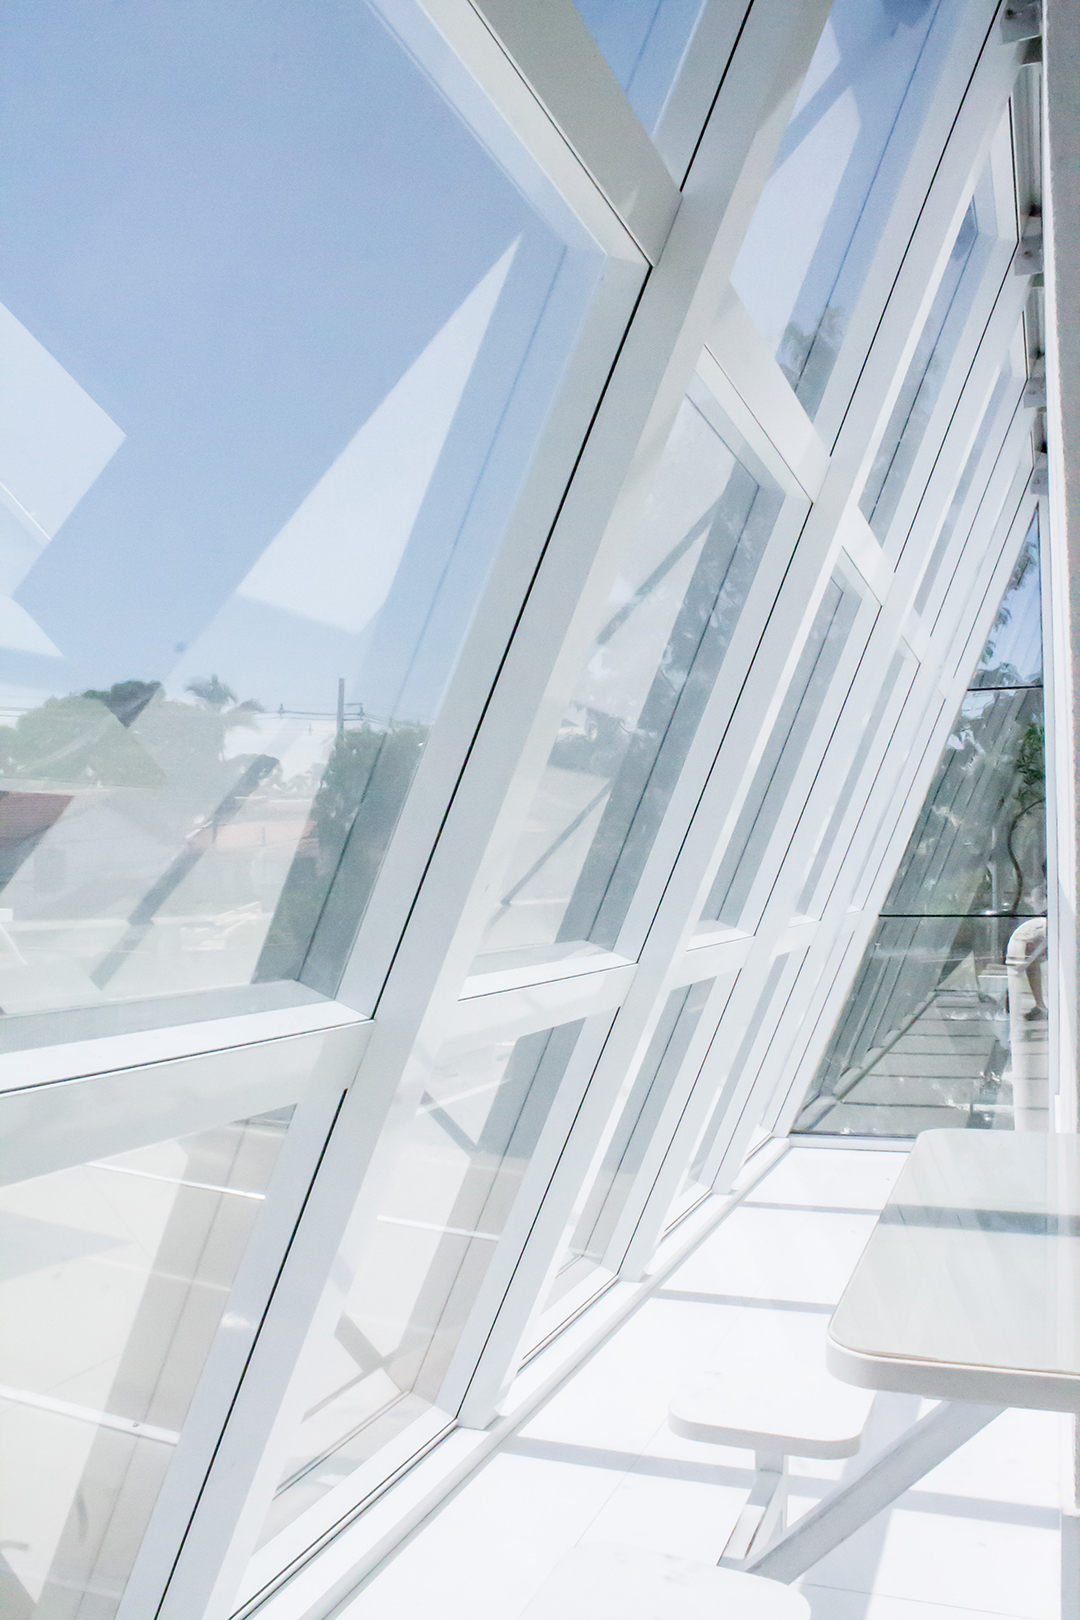 Sulinorte Esquadrias | Cobertura em Vidro com Pergolado de Madeira | Projeto Comercial Escola Umbrella